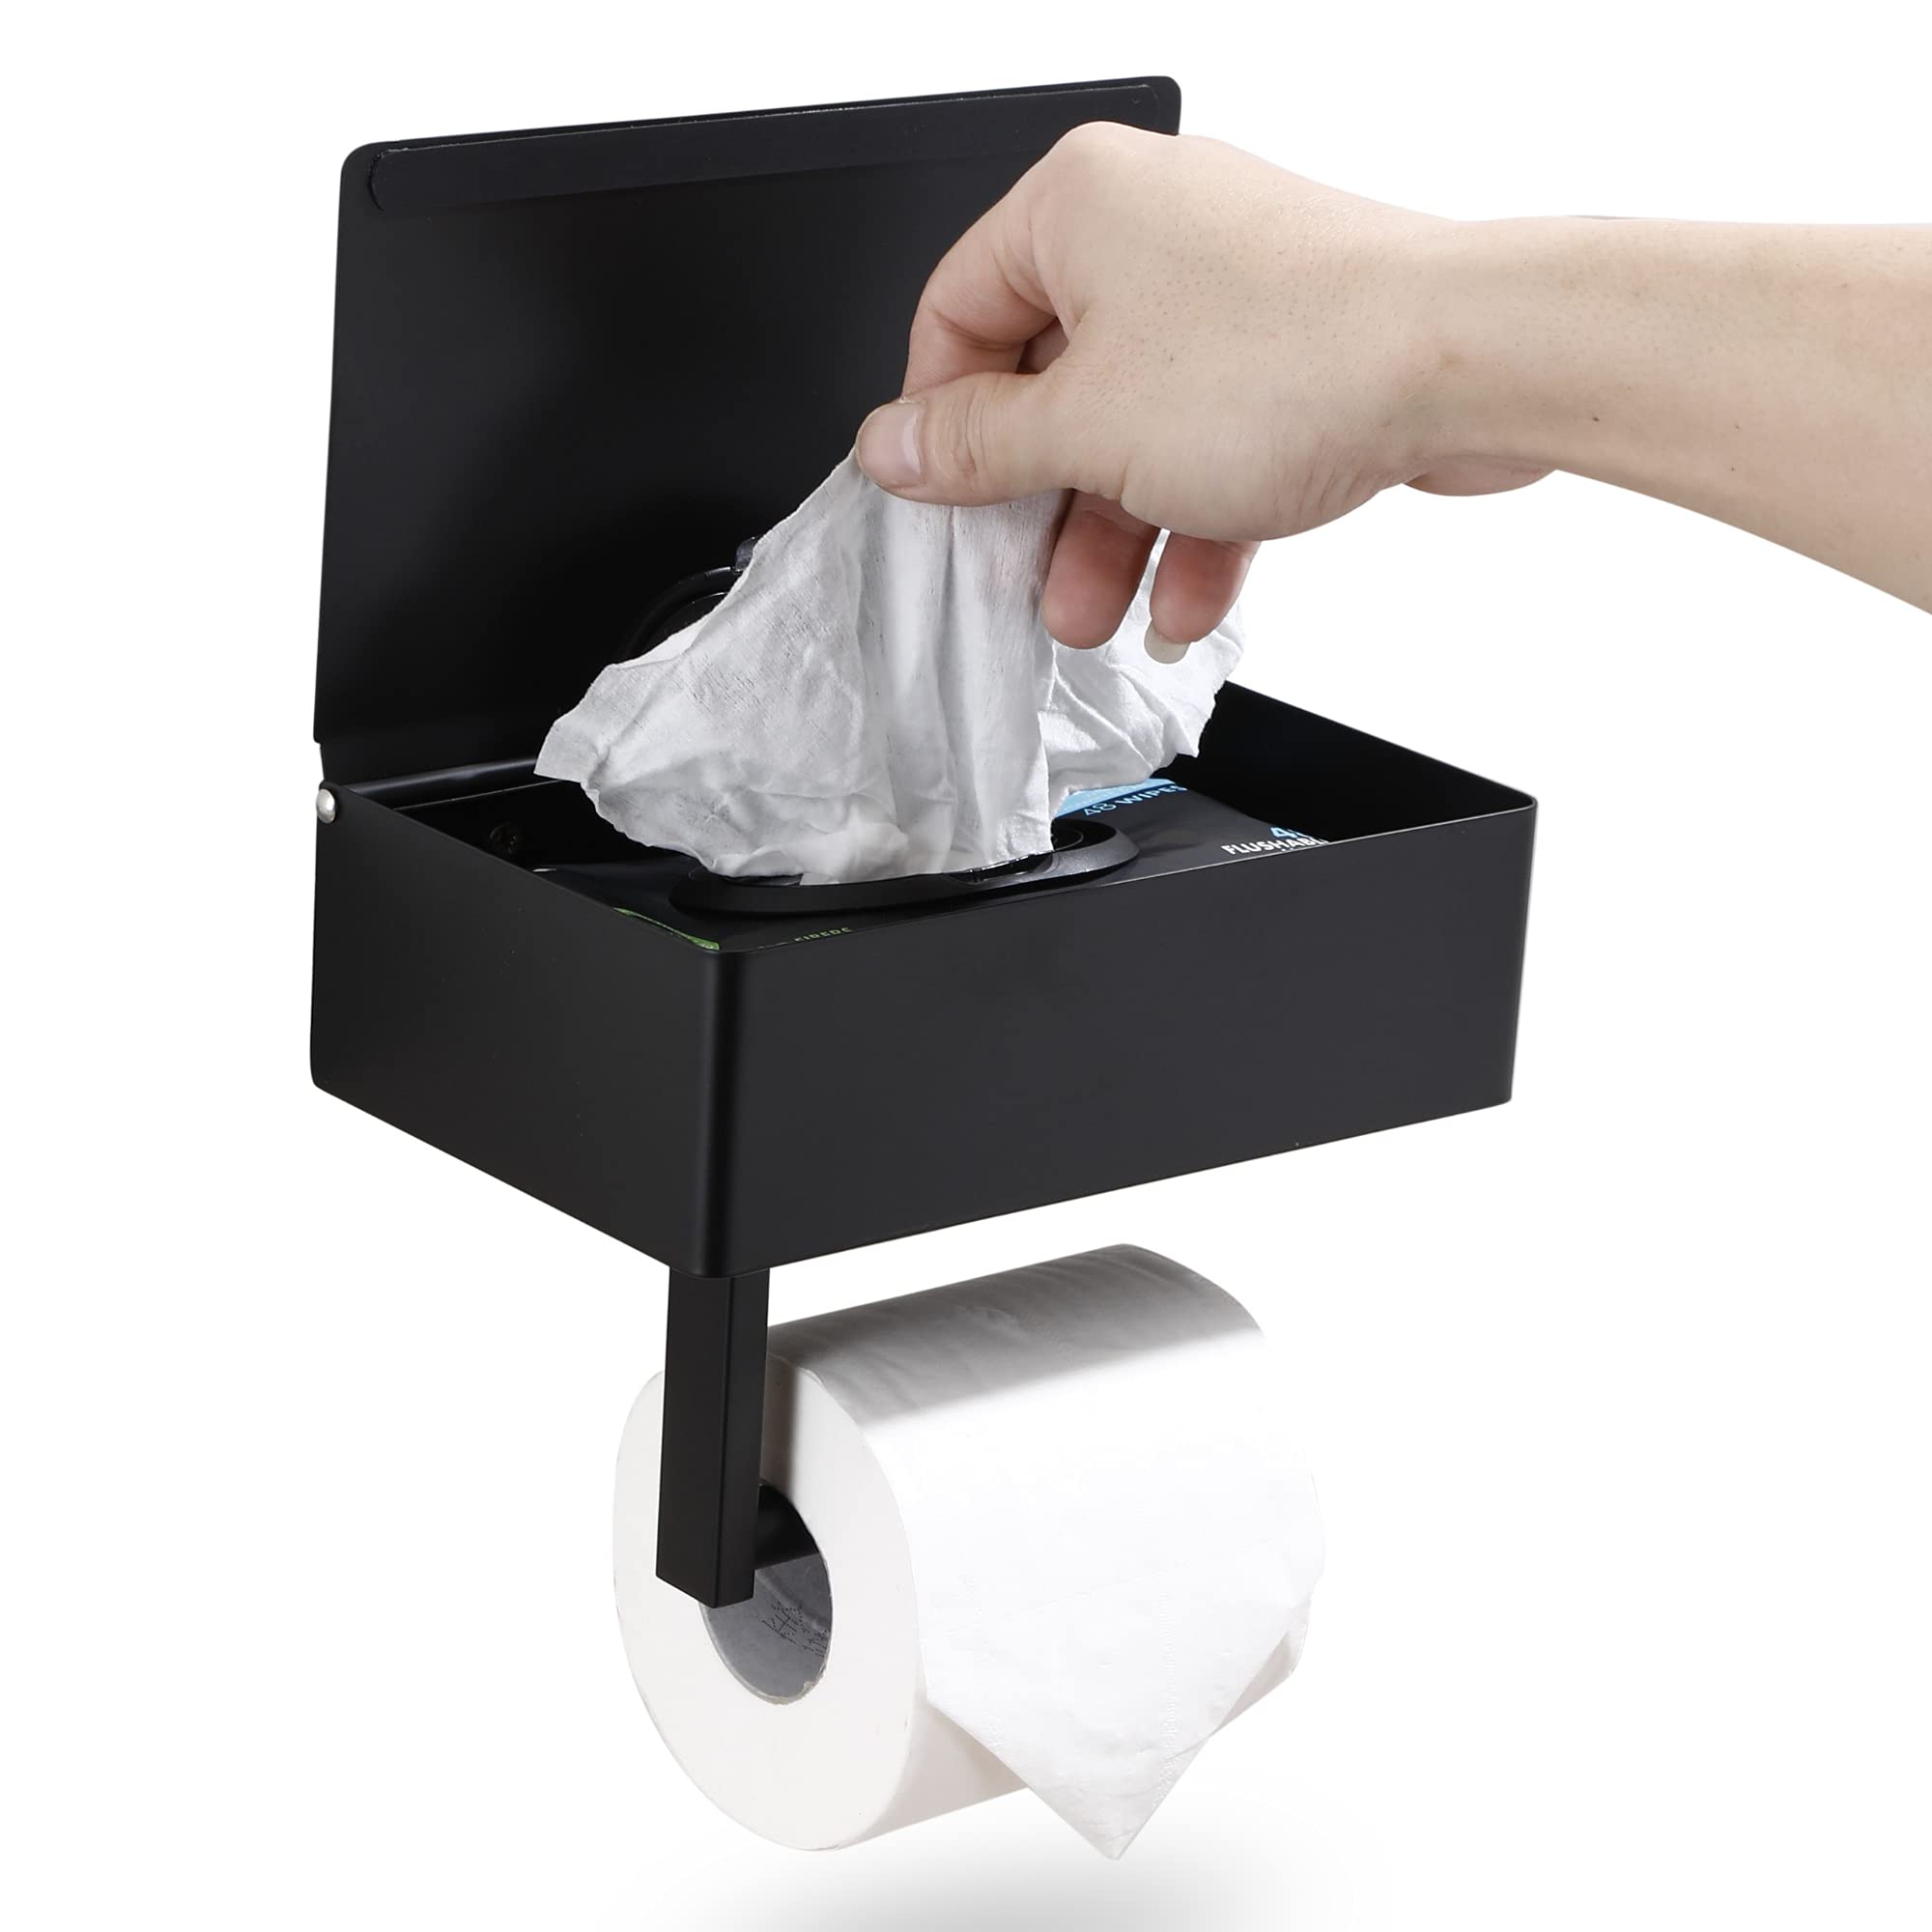 Day Moon Designs Toilet Paper Holder & Flushable Wet Wipes Dispenser for Bathroom  Adult, Men, Women, Feminine Wipe Storage Built-in  Stainless S